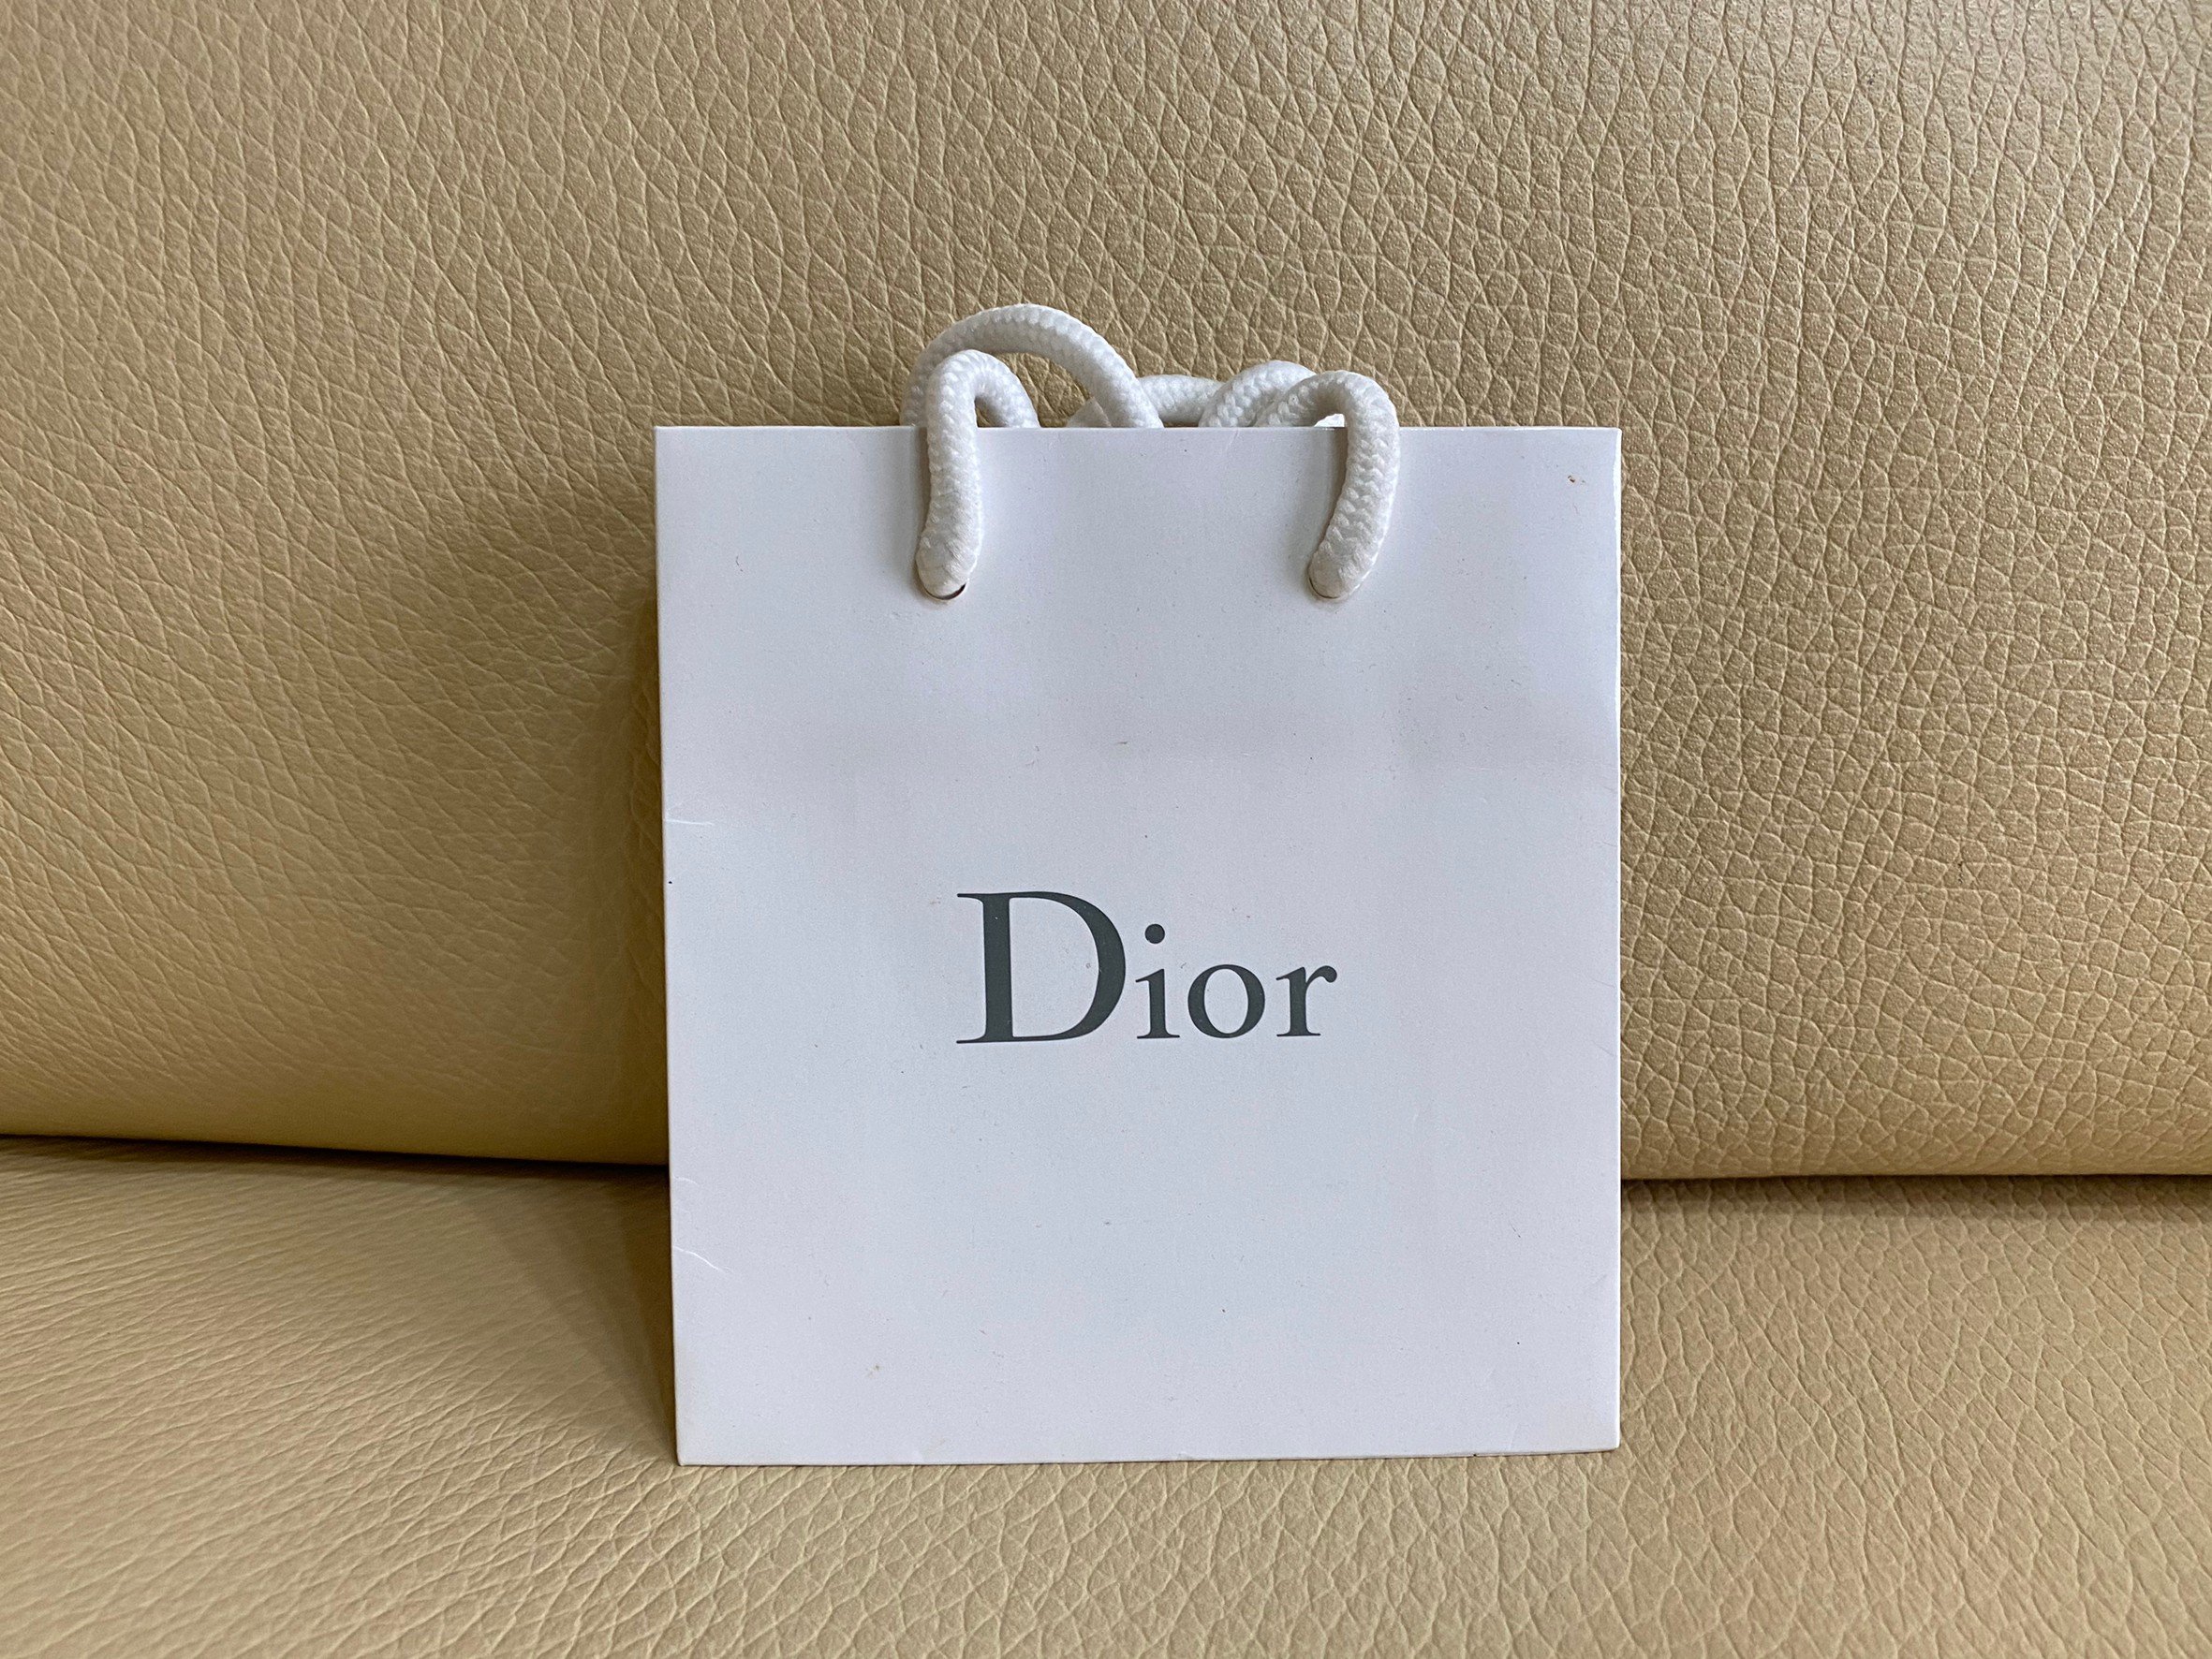 DIOR 迪奧小款化妝品名牌禮品紙袋提袋手提袋送禮包裝禮物袋包裝袋六禮